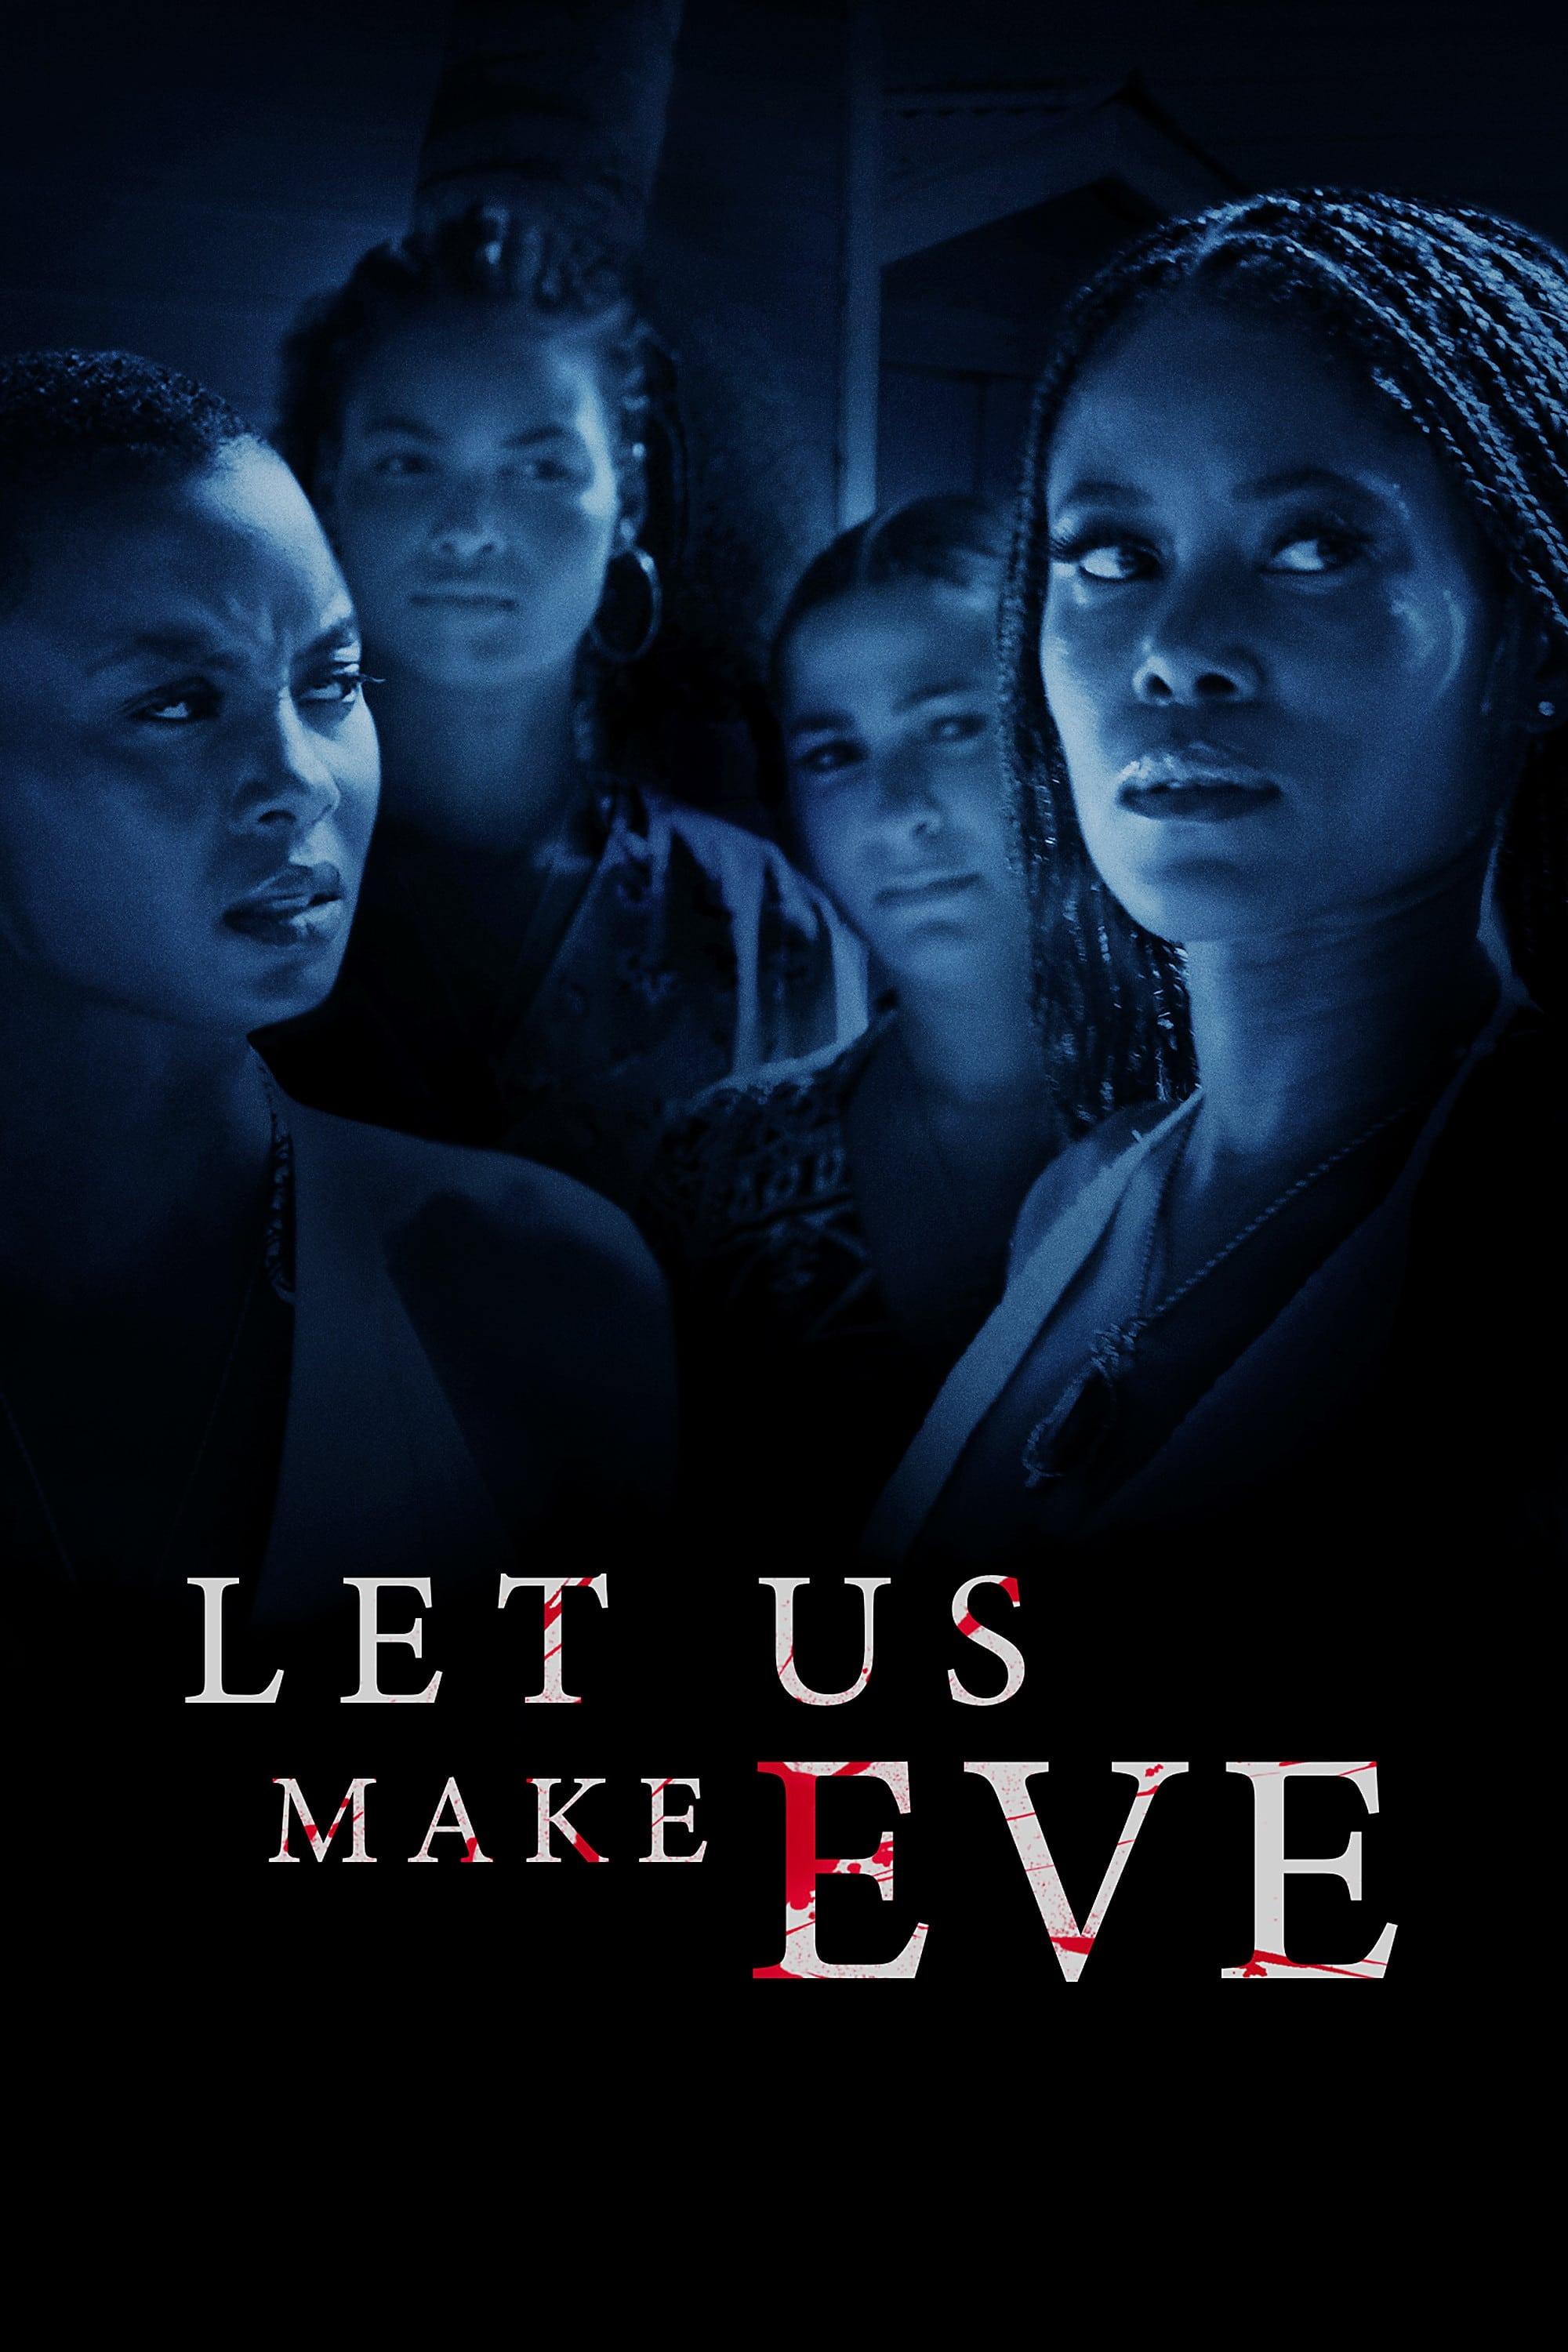 Let Us Make Eve poster